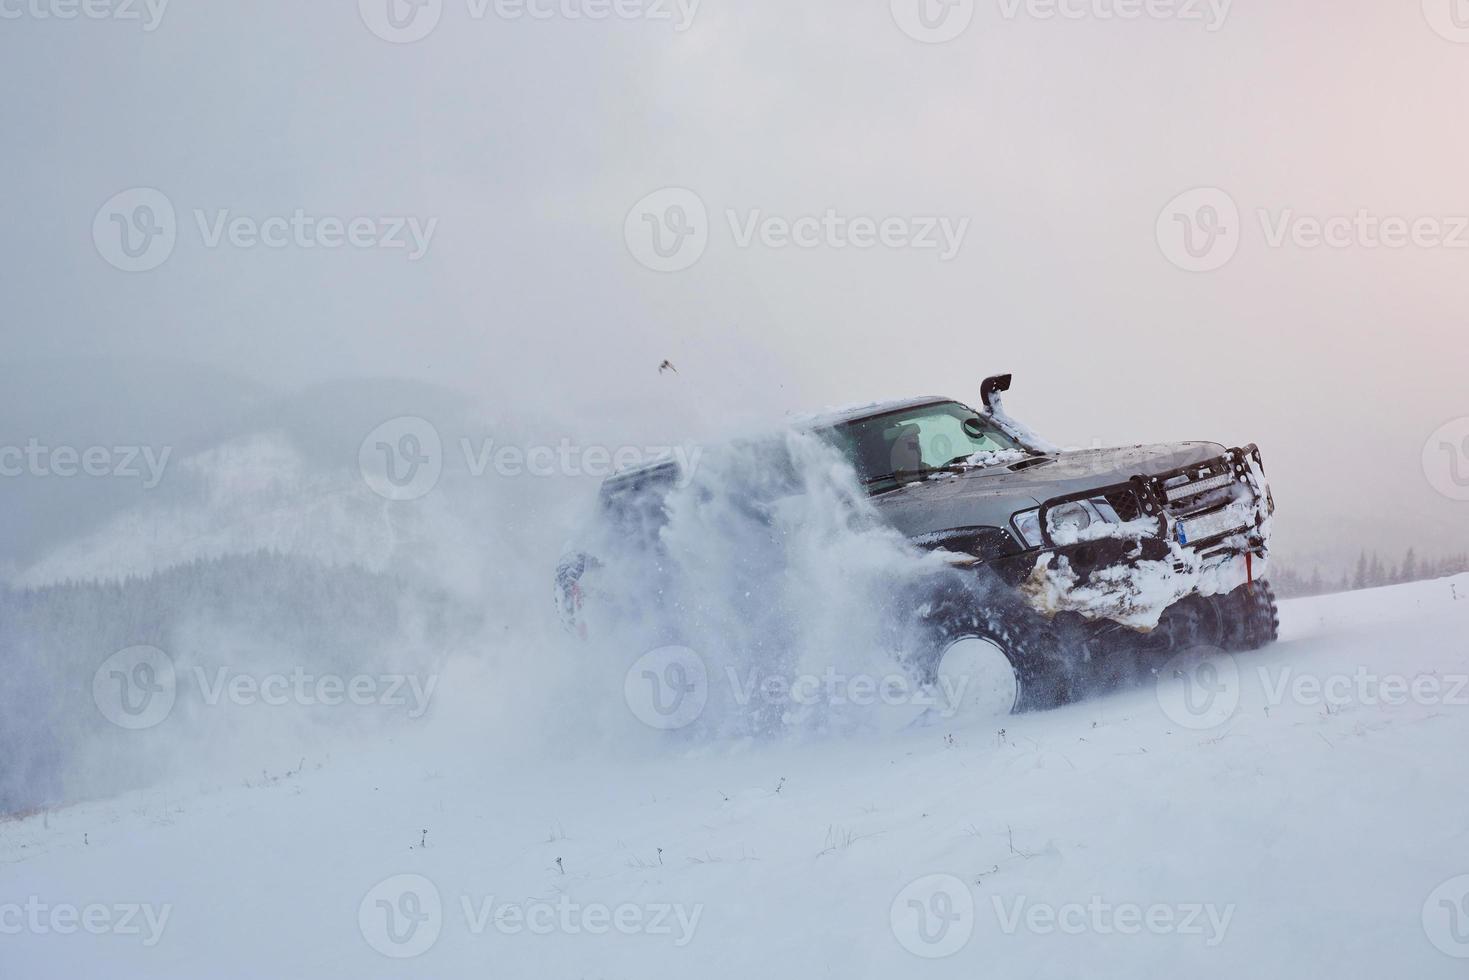 suvturer på en vintermonter som kör risk för snö och is, drivande foto